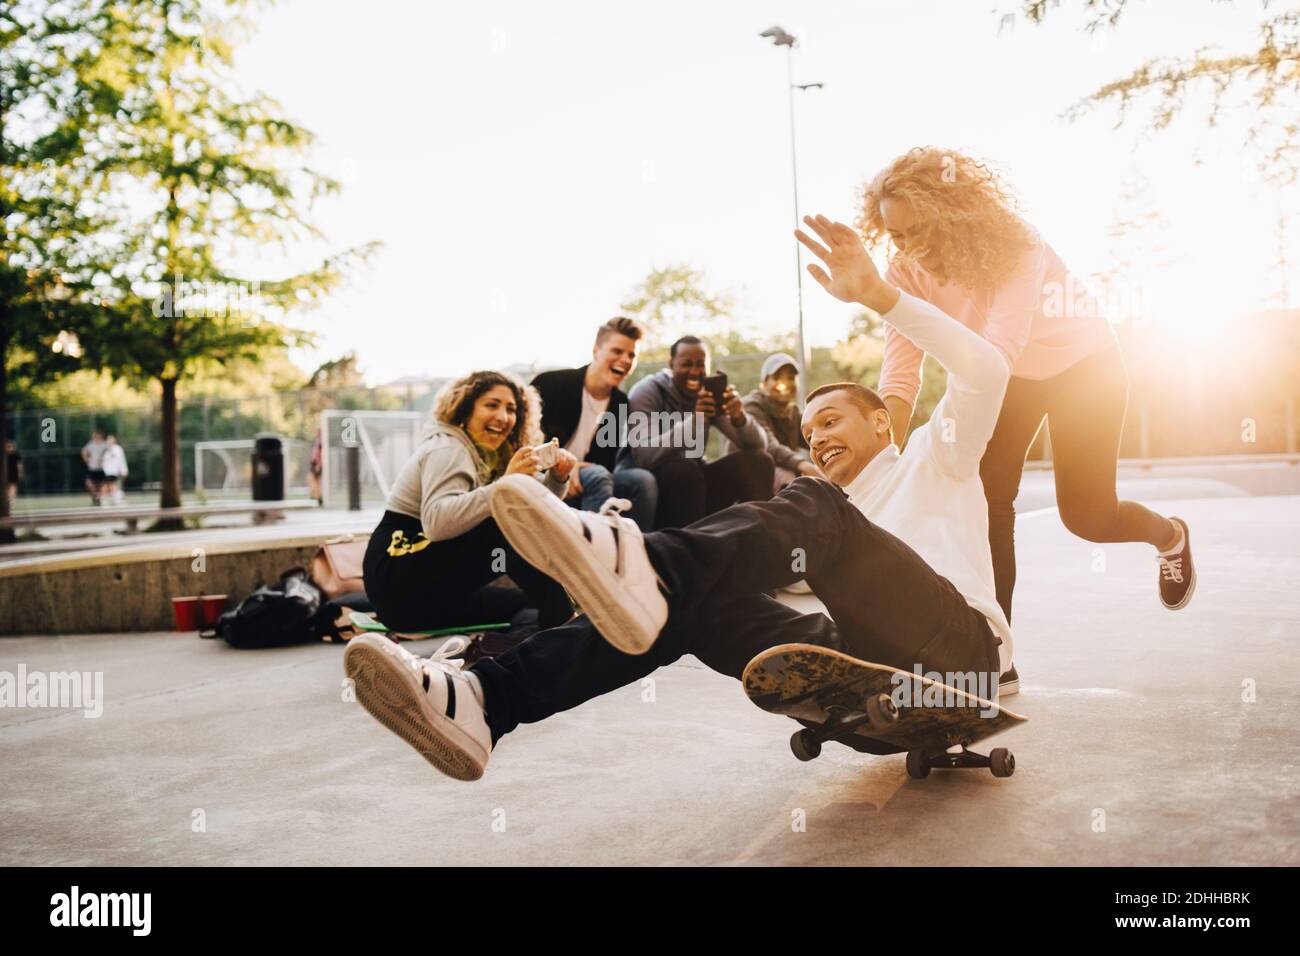 Rire des amis photographier un homme tombant du skateboard pendant que la femme pousse lui au parc Banque D'Images